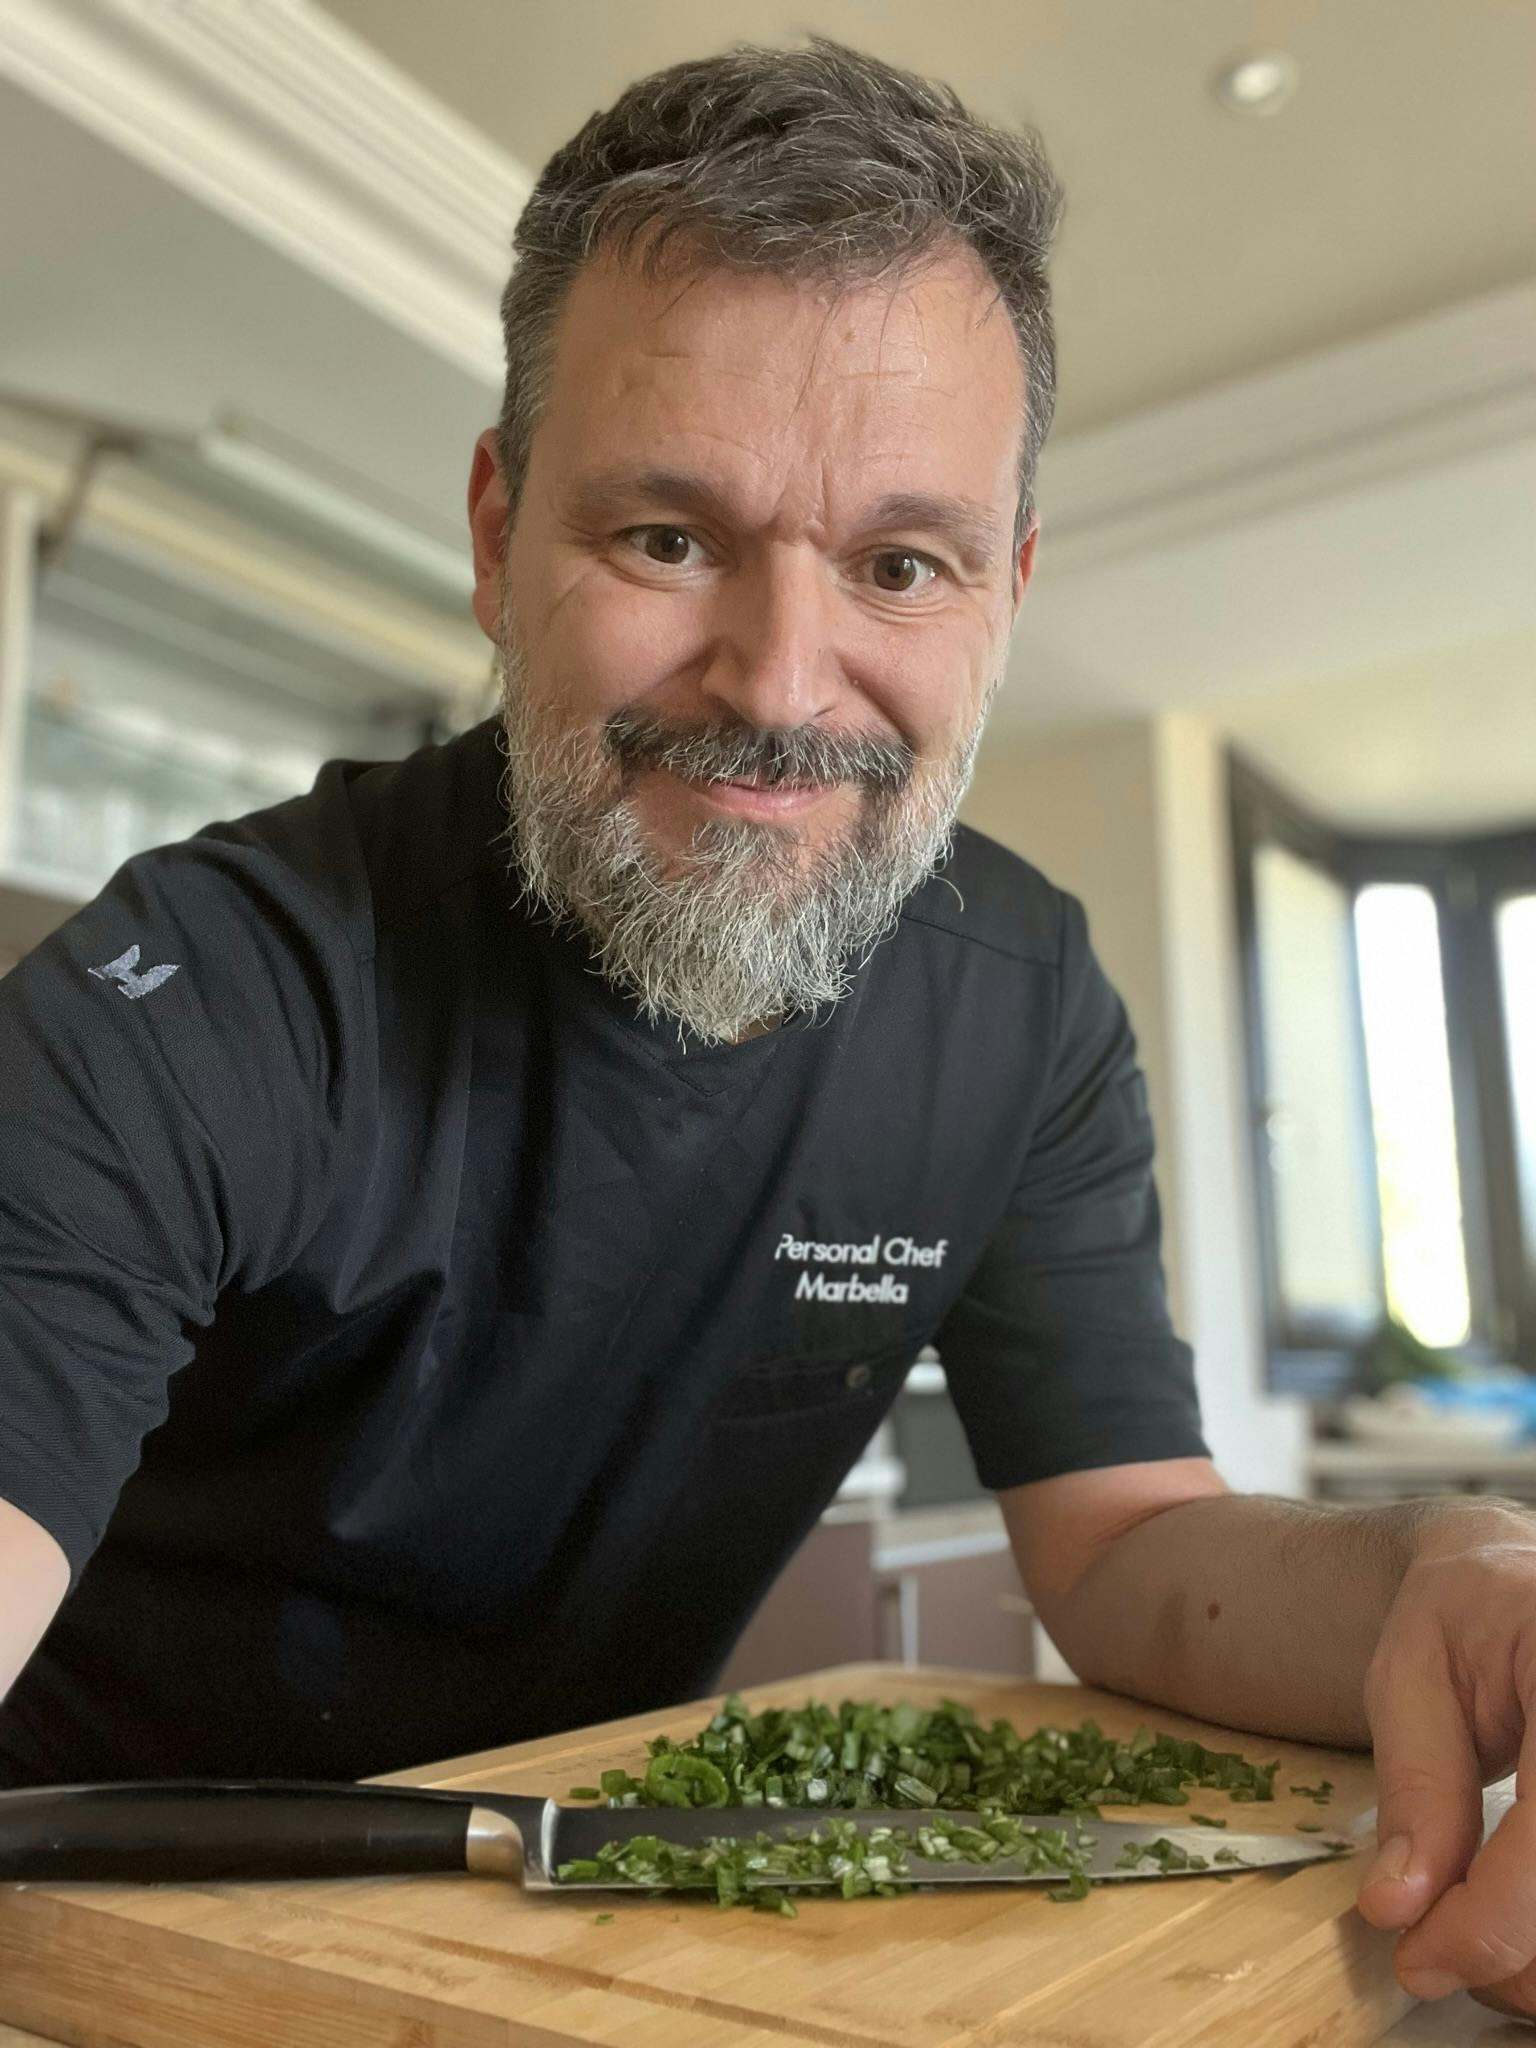 Chef Paolo Bertucci's picture